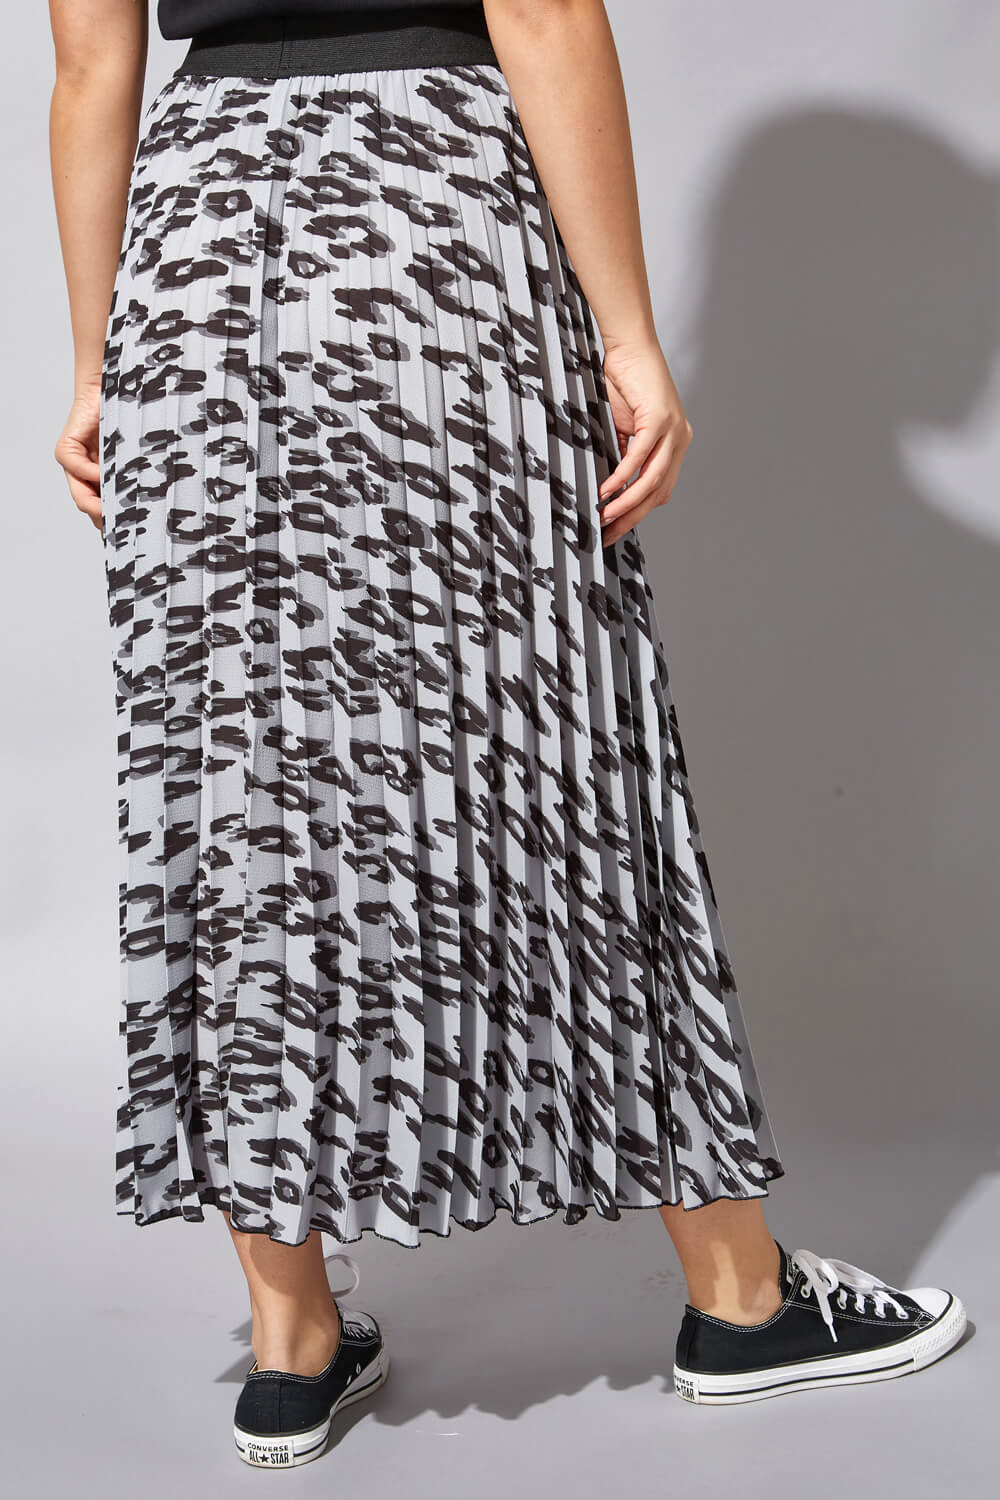 pleated maxi skirt grey